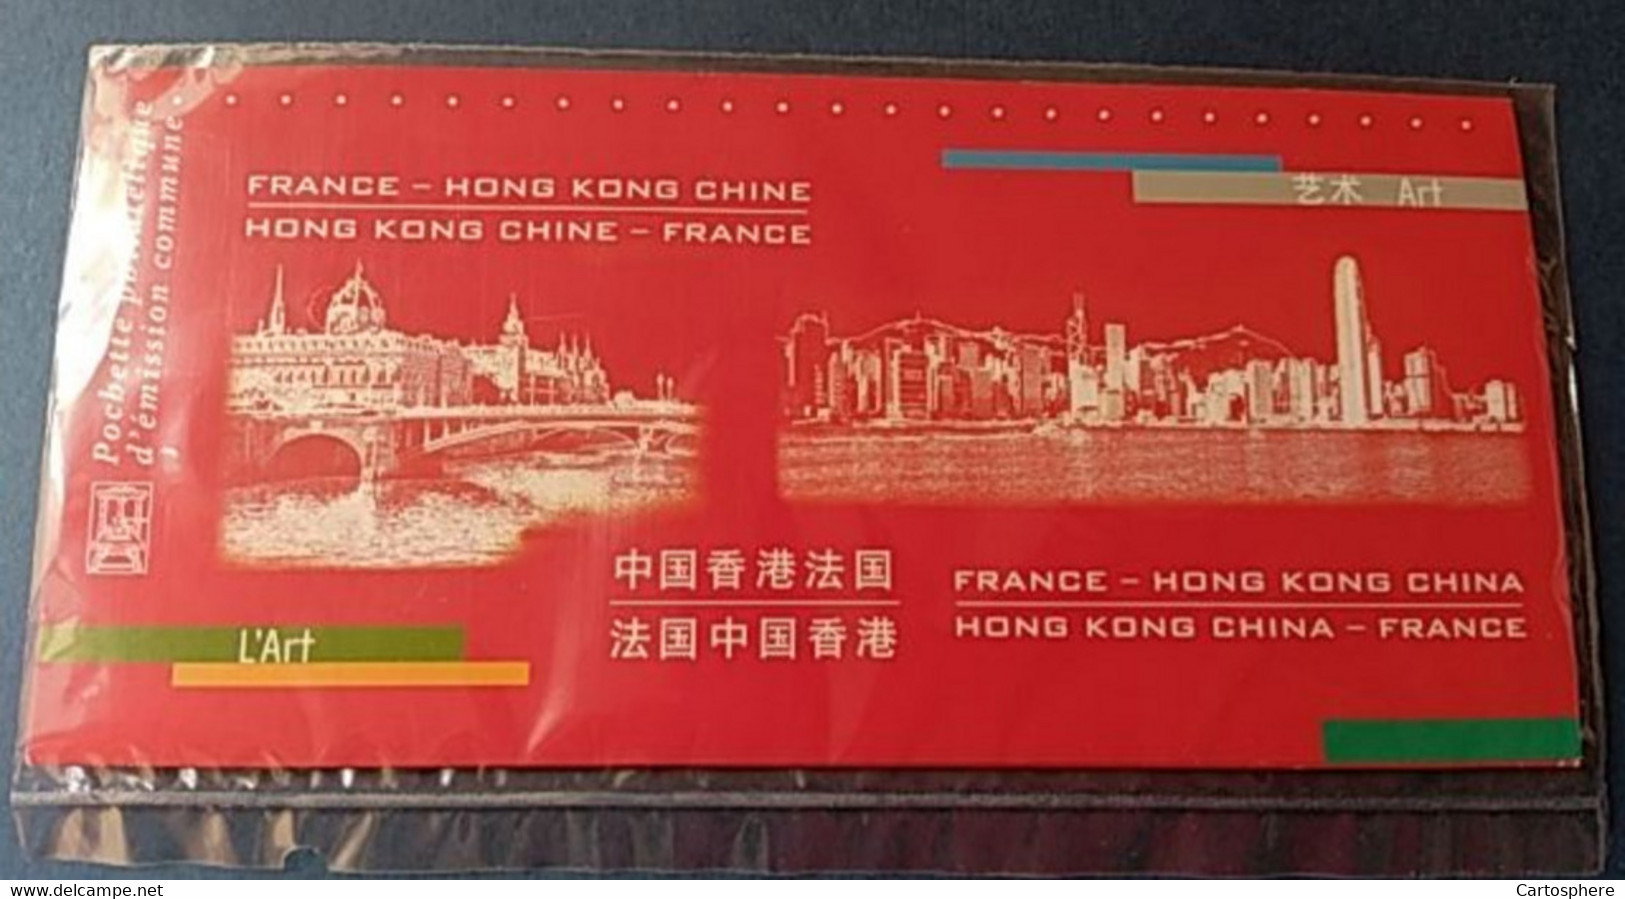 BLOC SOUVENIR EMISSION COMMUNE FRANCE-HONG KONG CHINE CHINA 2012 - Blocs Souvenir